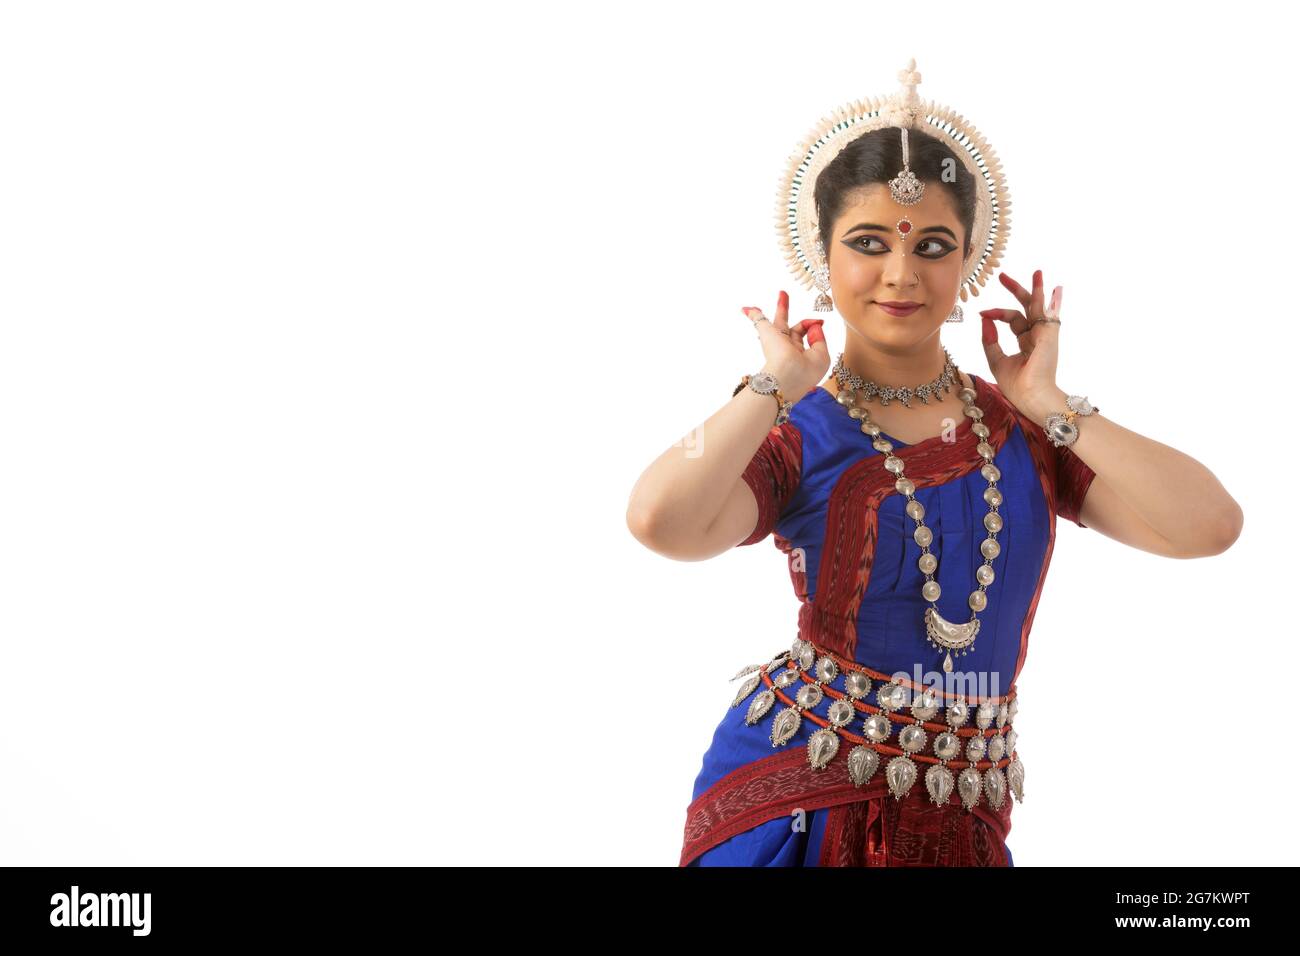 Danseur d'Odissi exécutant shringaar mudra Banque D'Images